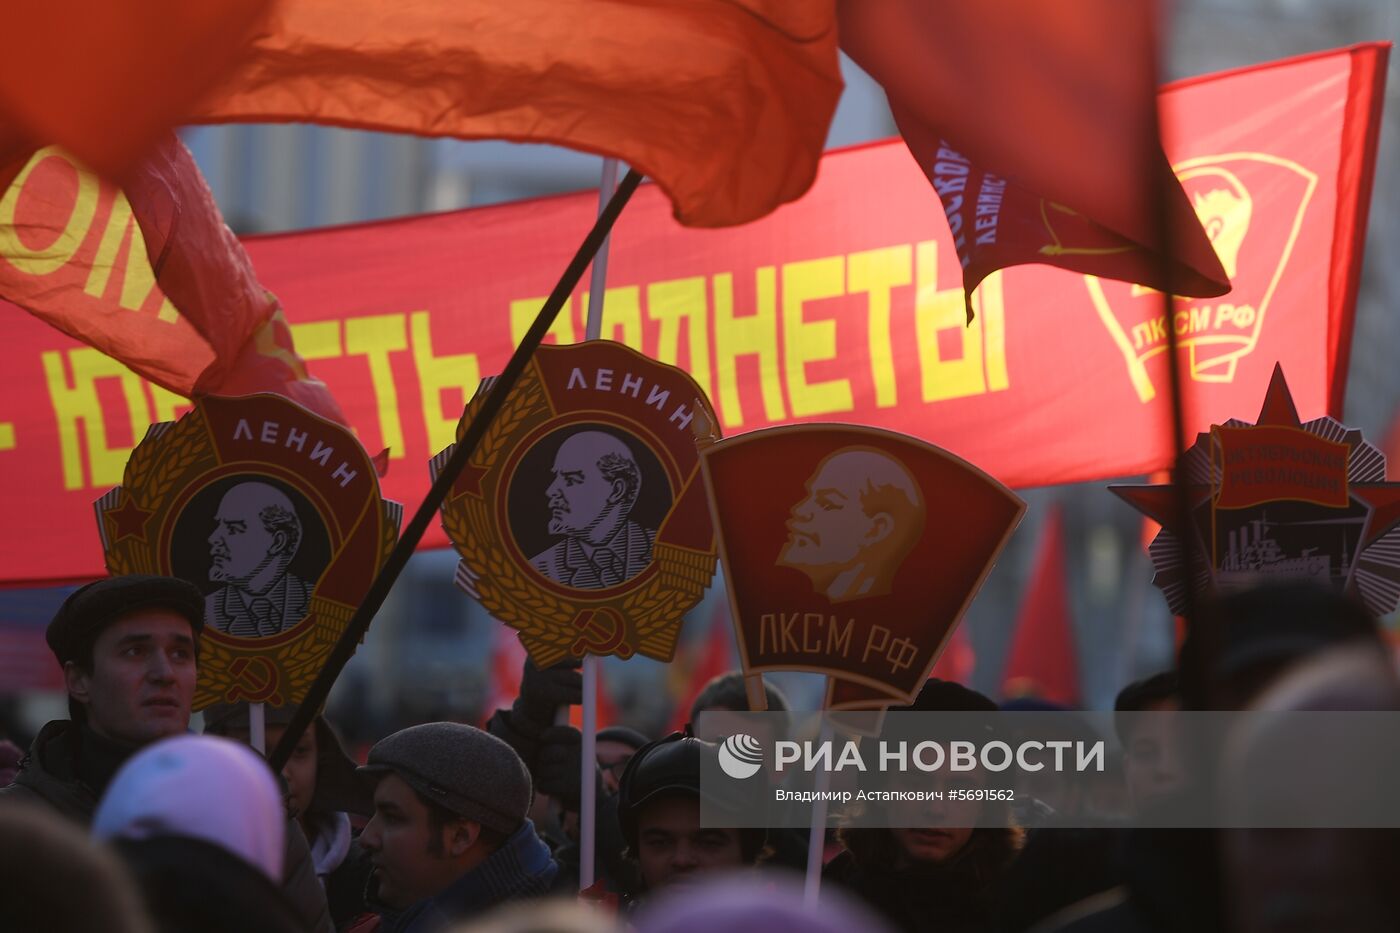 Шествие, посвященное 101-й годовщине Октябрьской революции, в Москве